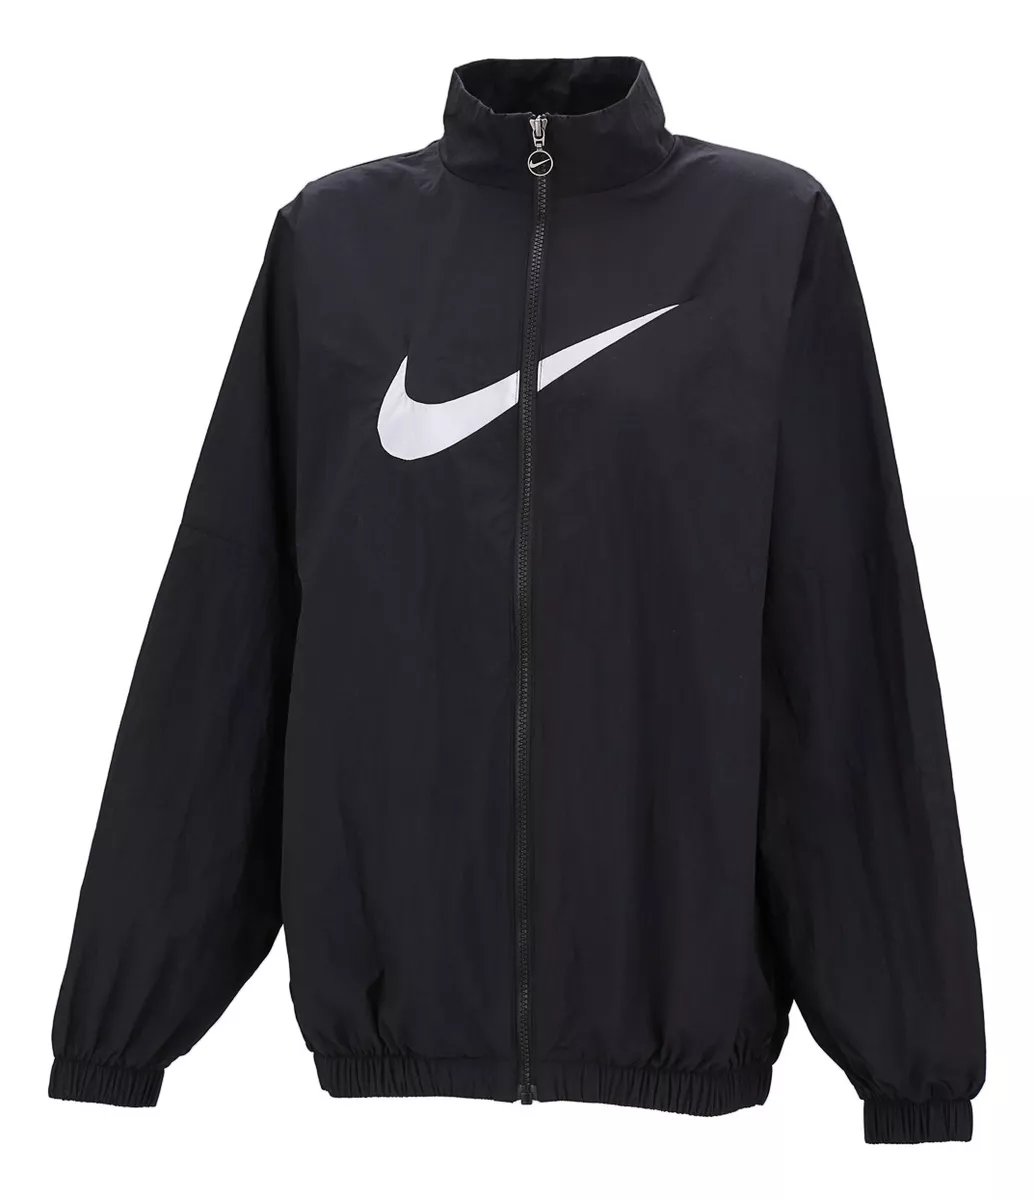 Campera Nike Sportswear Essential En Negro Y Gris